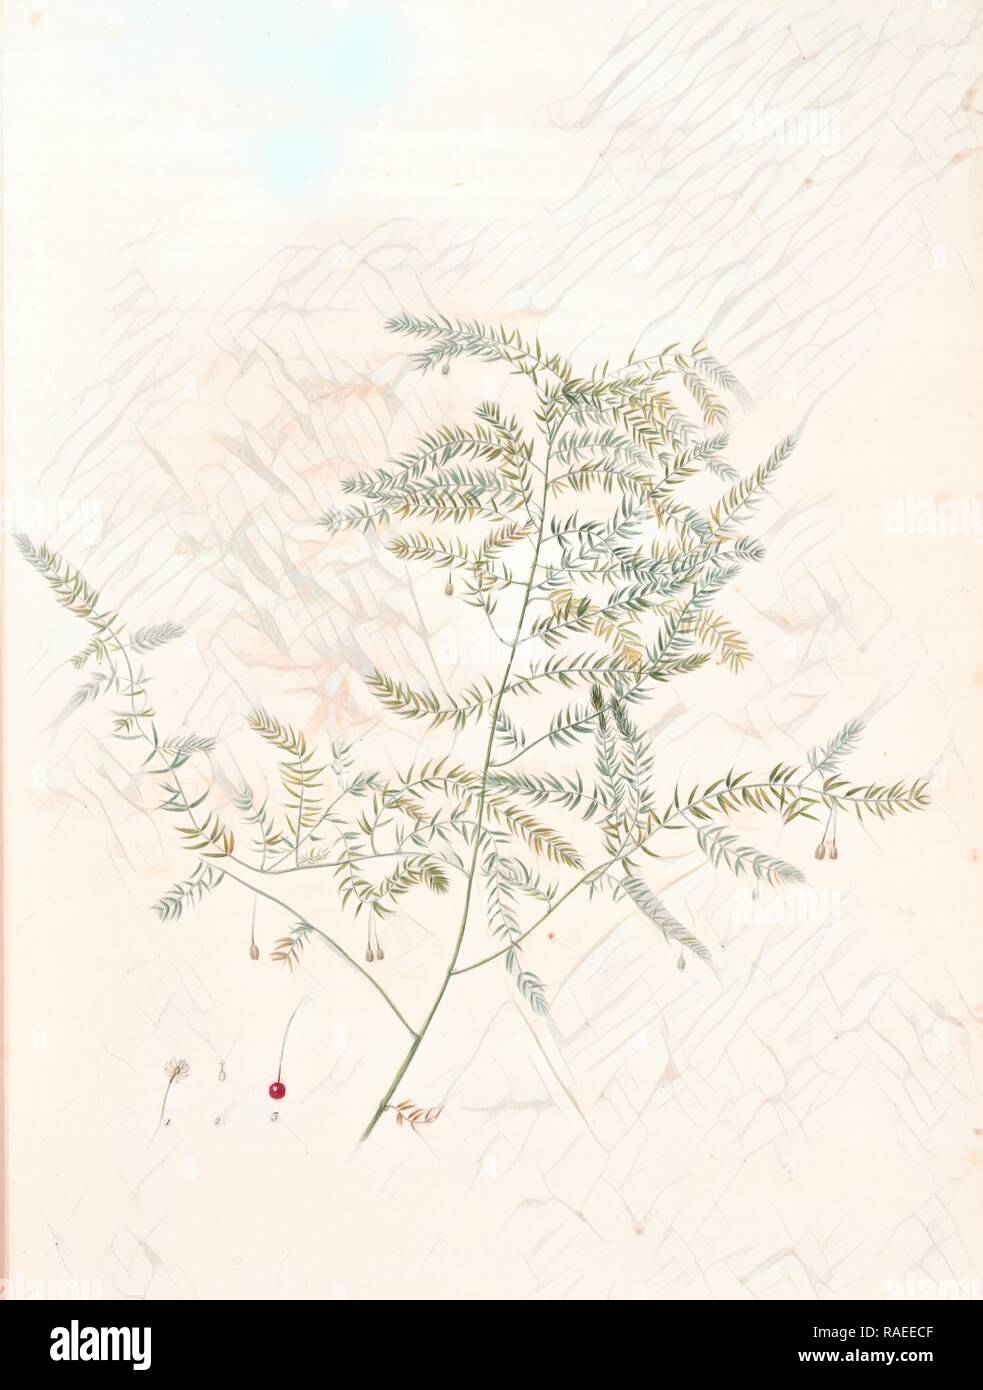 Asparagus pectinatus, Asparagus scandens, Asperge à feuilles en peigne, Redouté, Pierre Joseph, 1759-1840, les reimagined Stock Photo